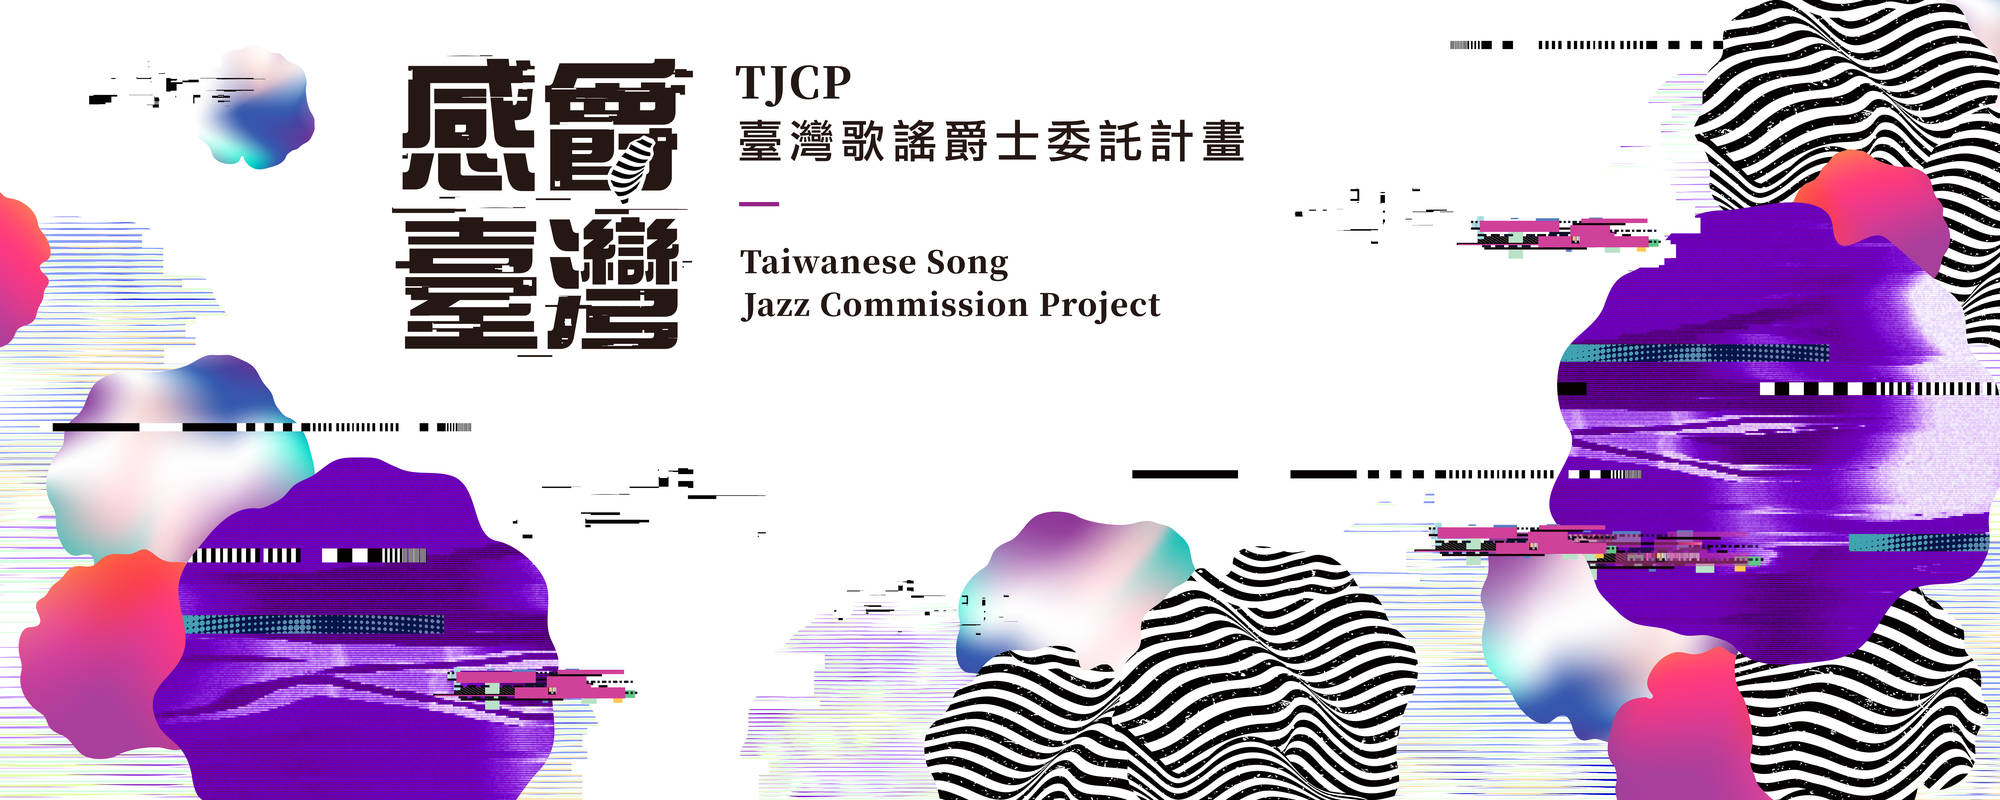 《臺北爵士大樂隊－TJCP臺灣歌謠爵士委託計畫巡迴音樂會》